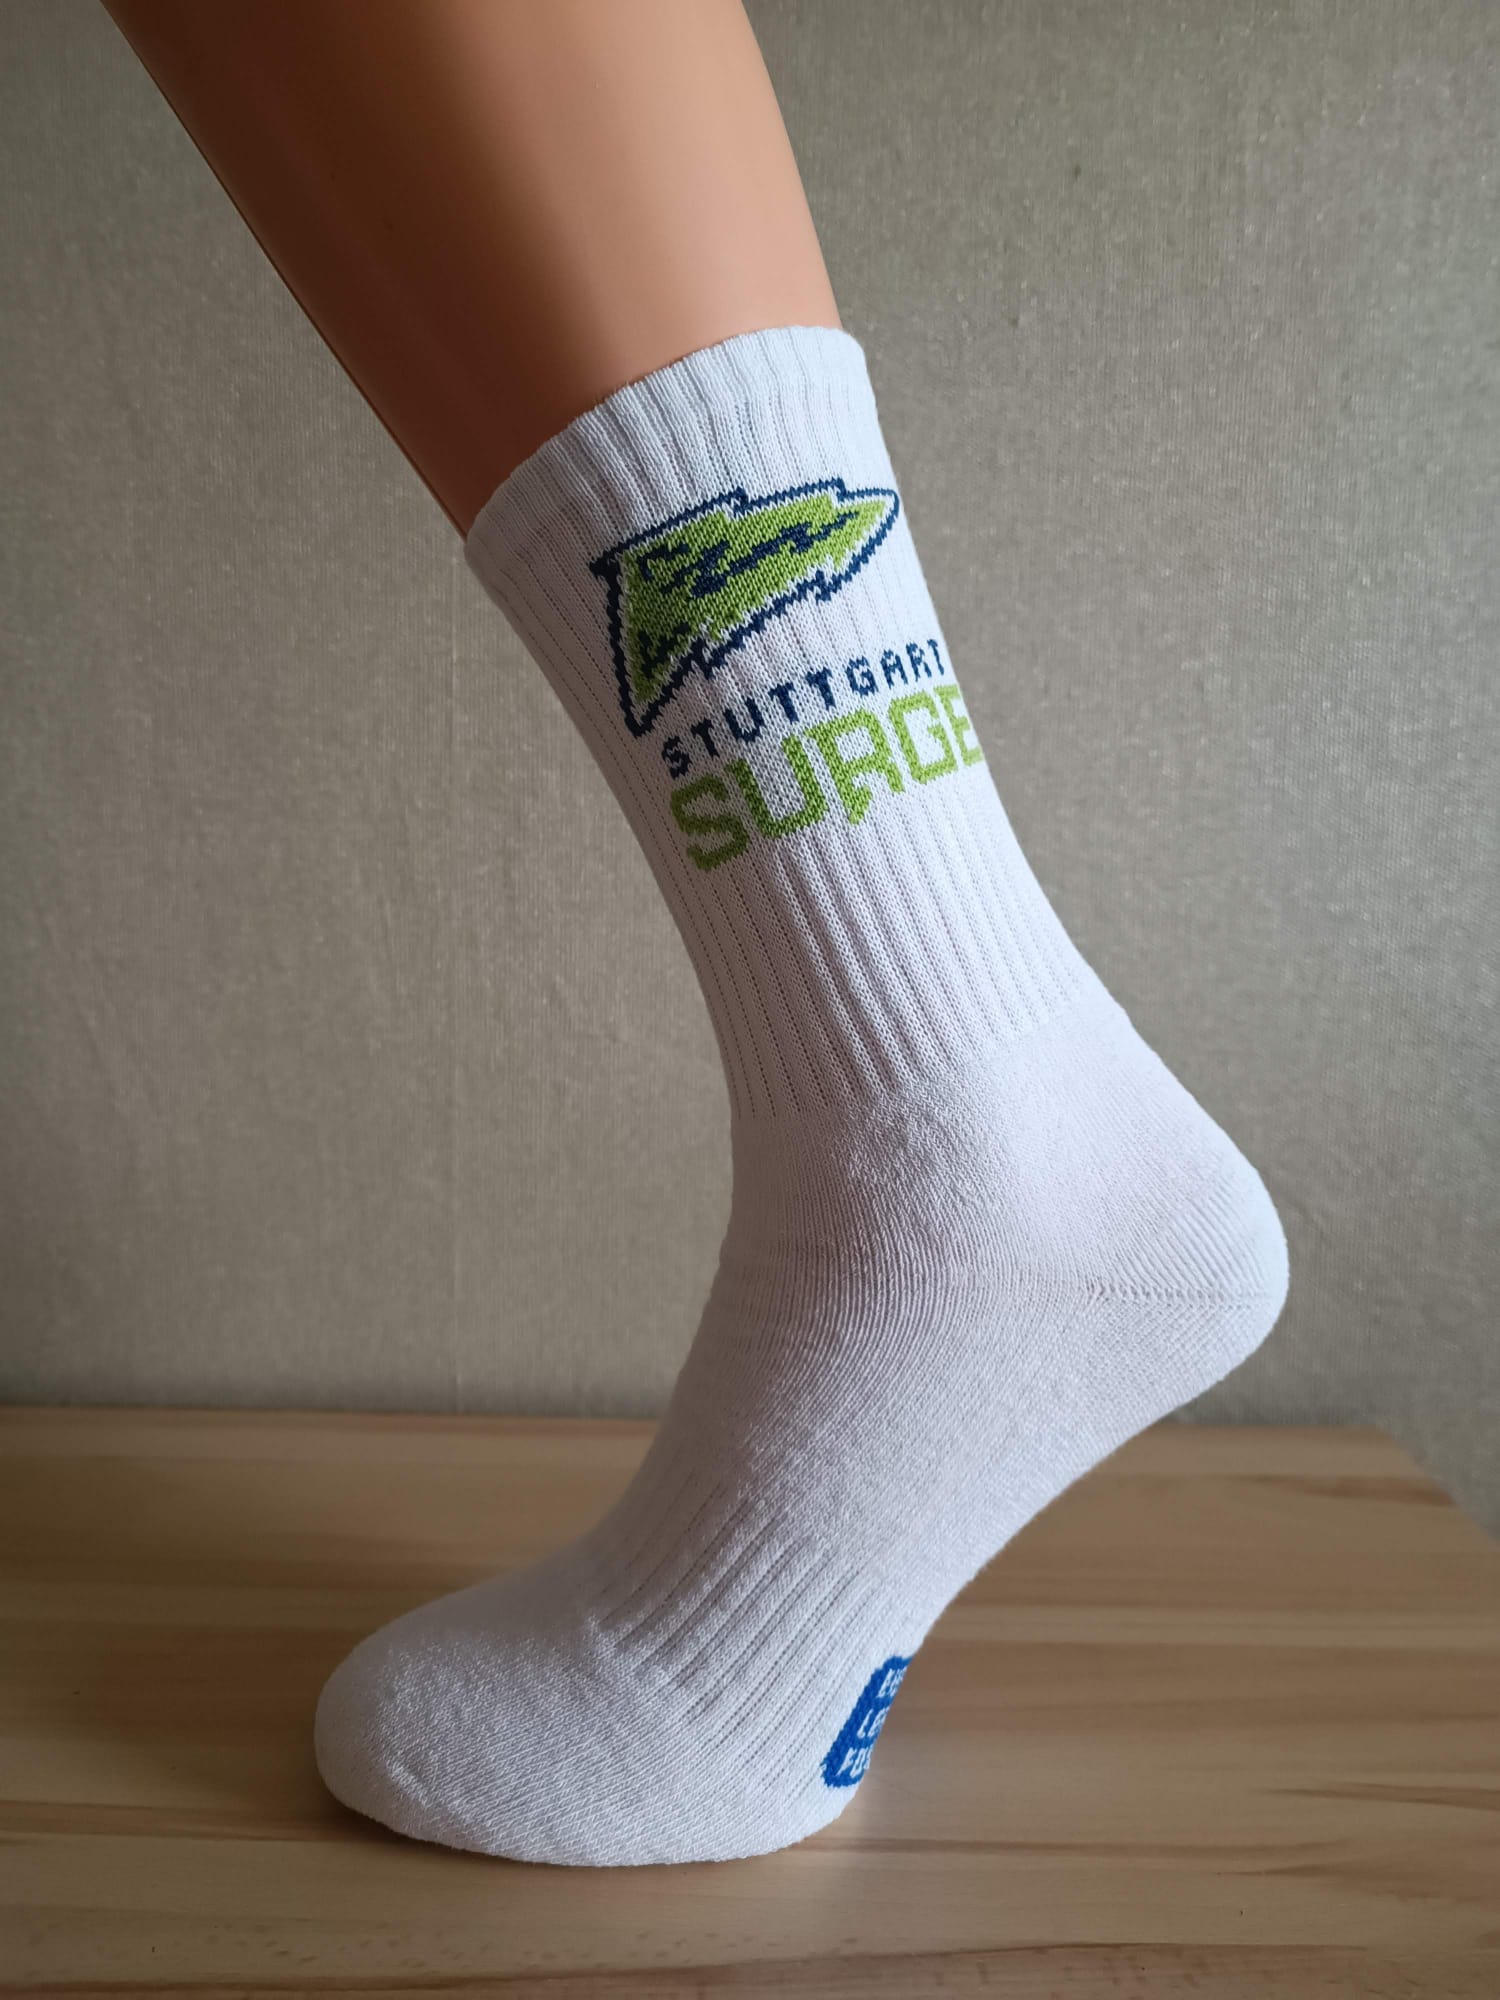 Stuttgart Surge Socks